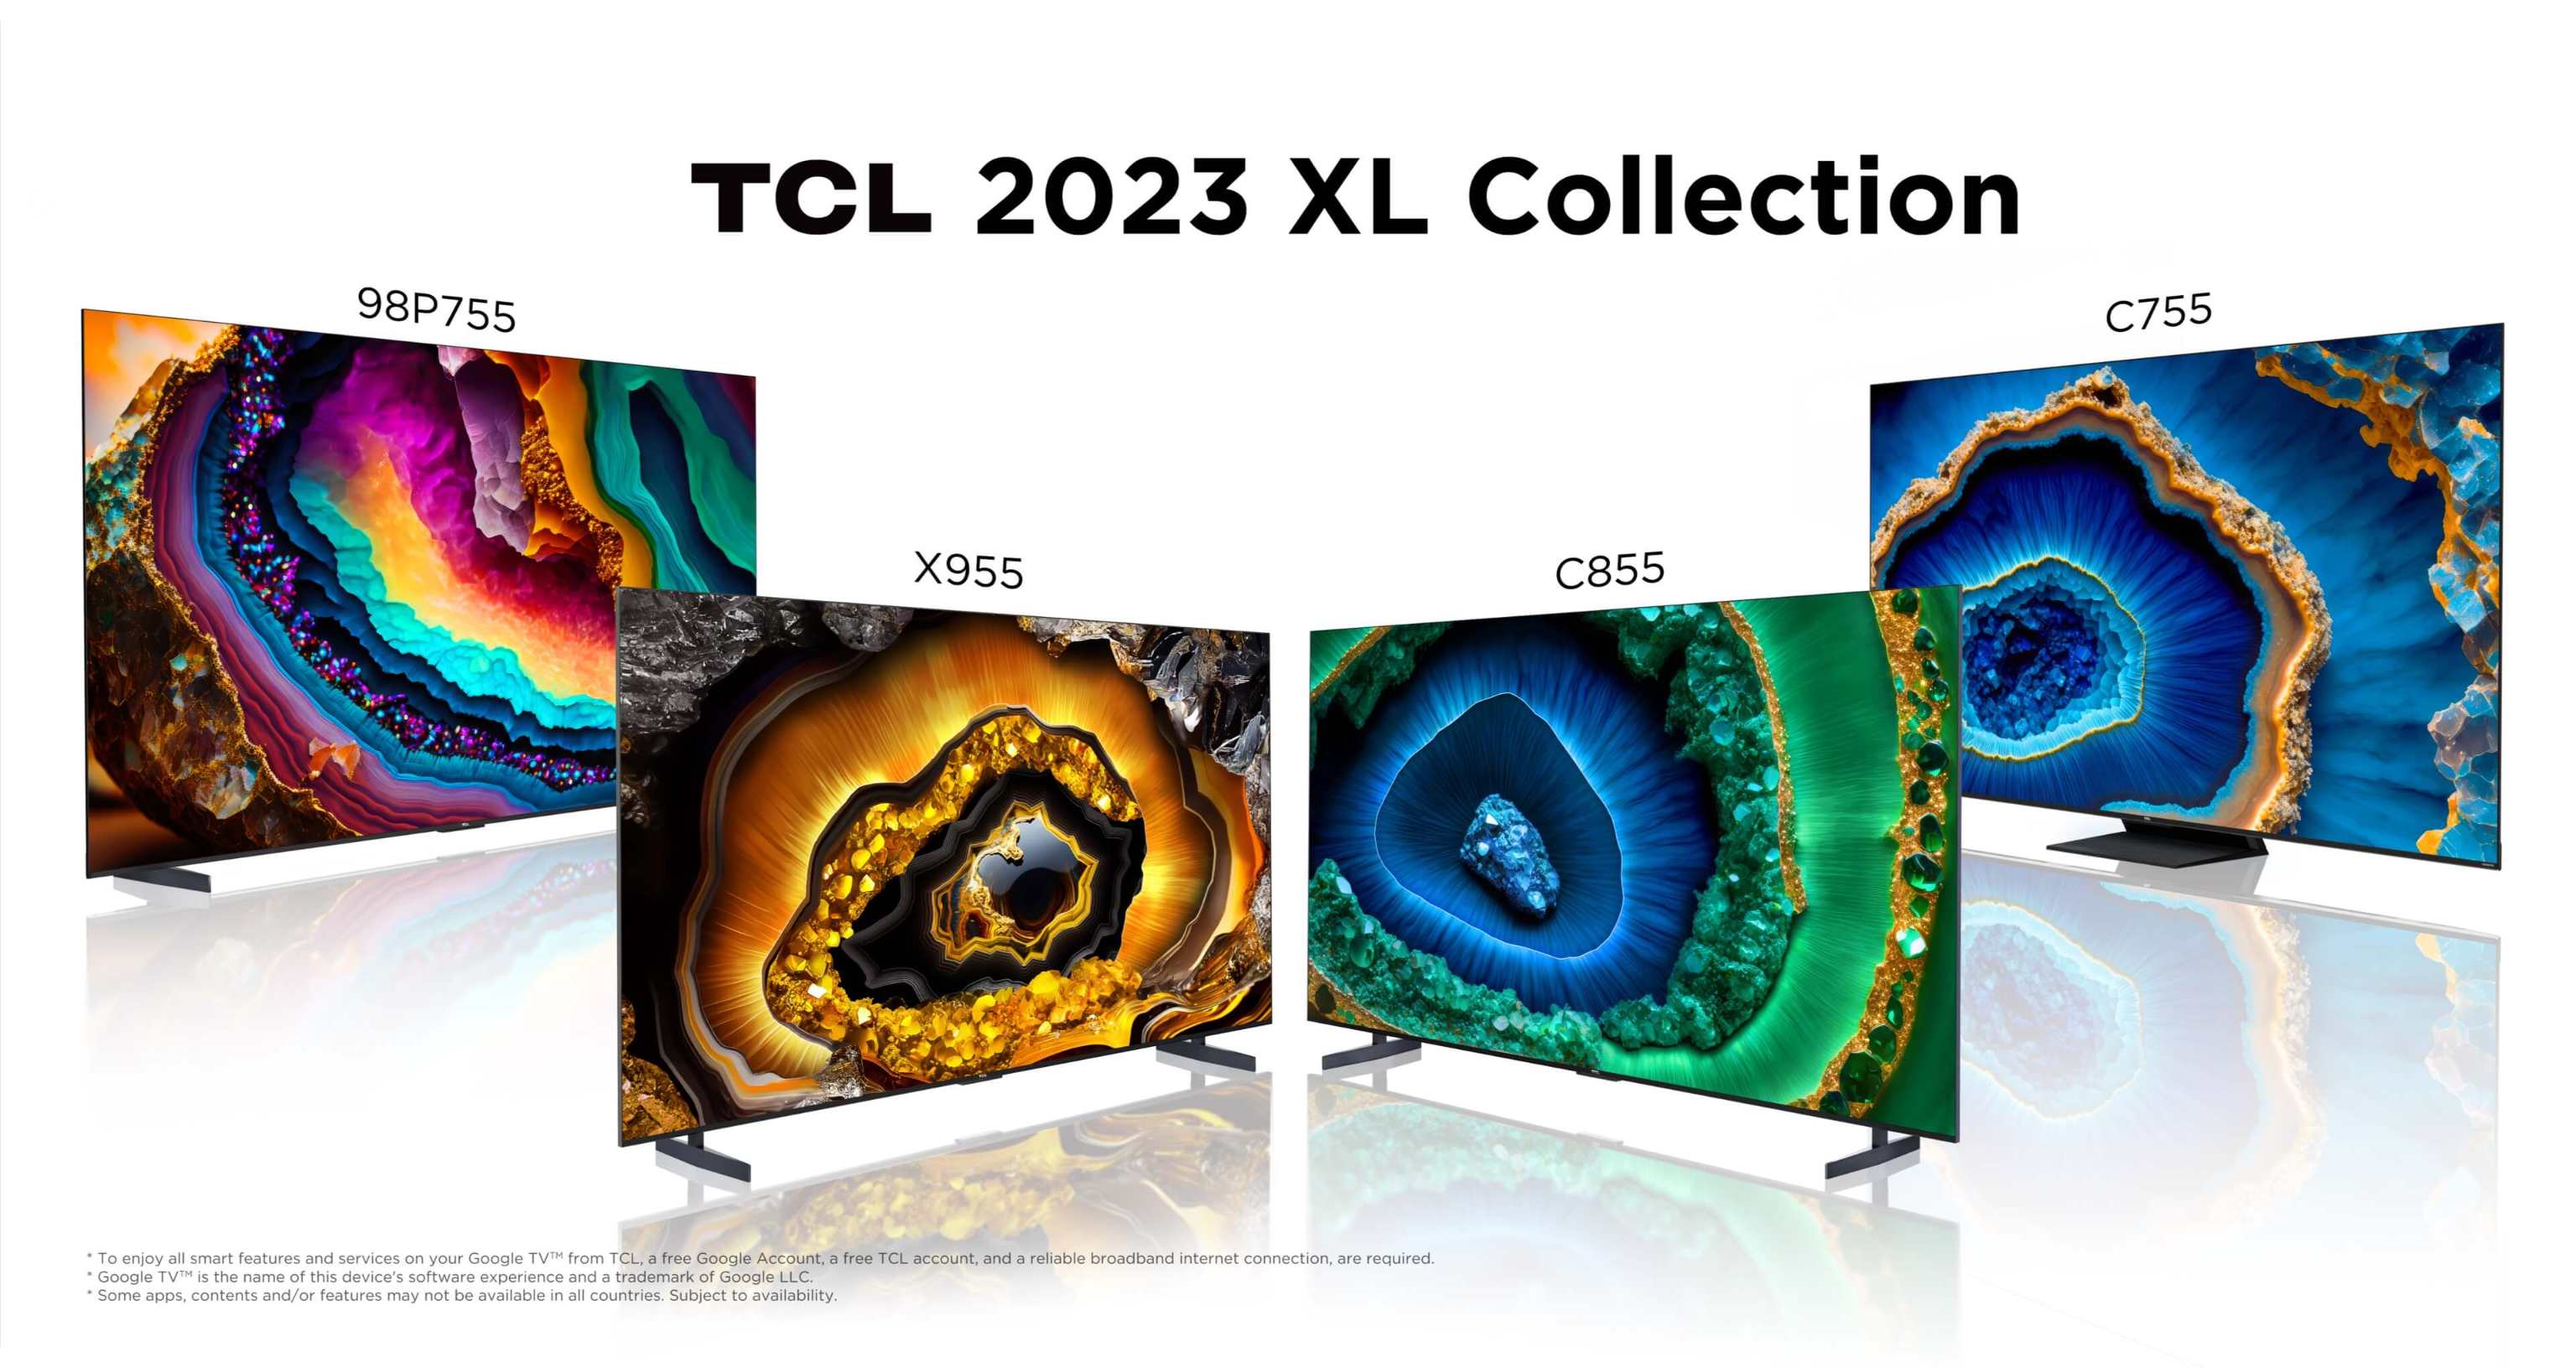 Colección TCL XL 2023